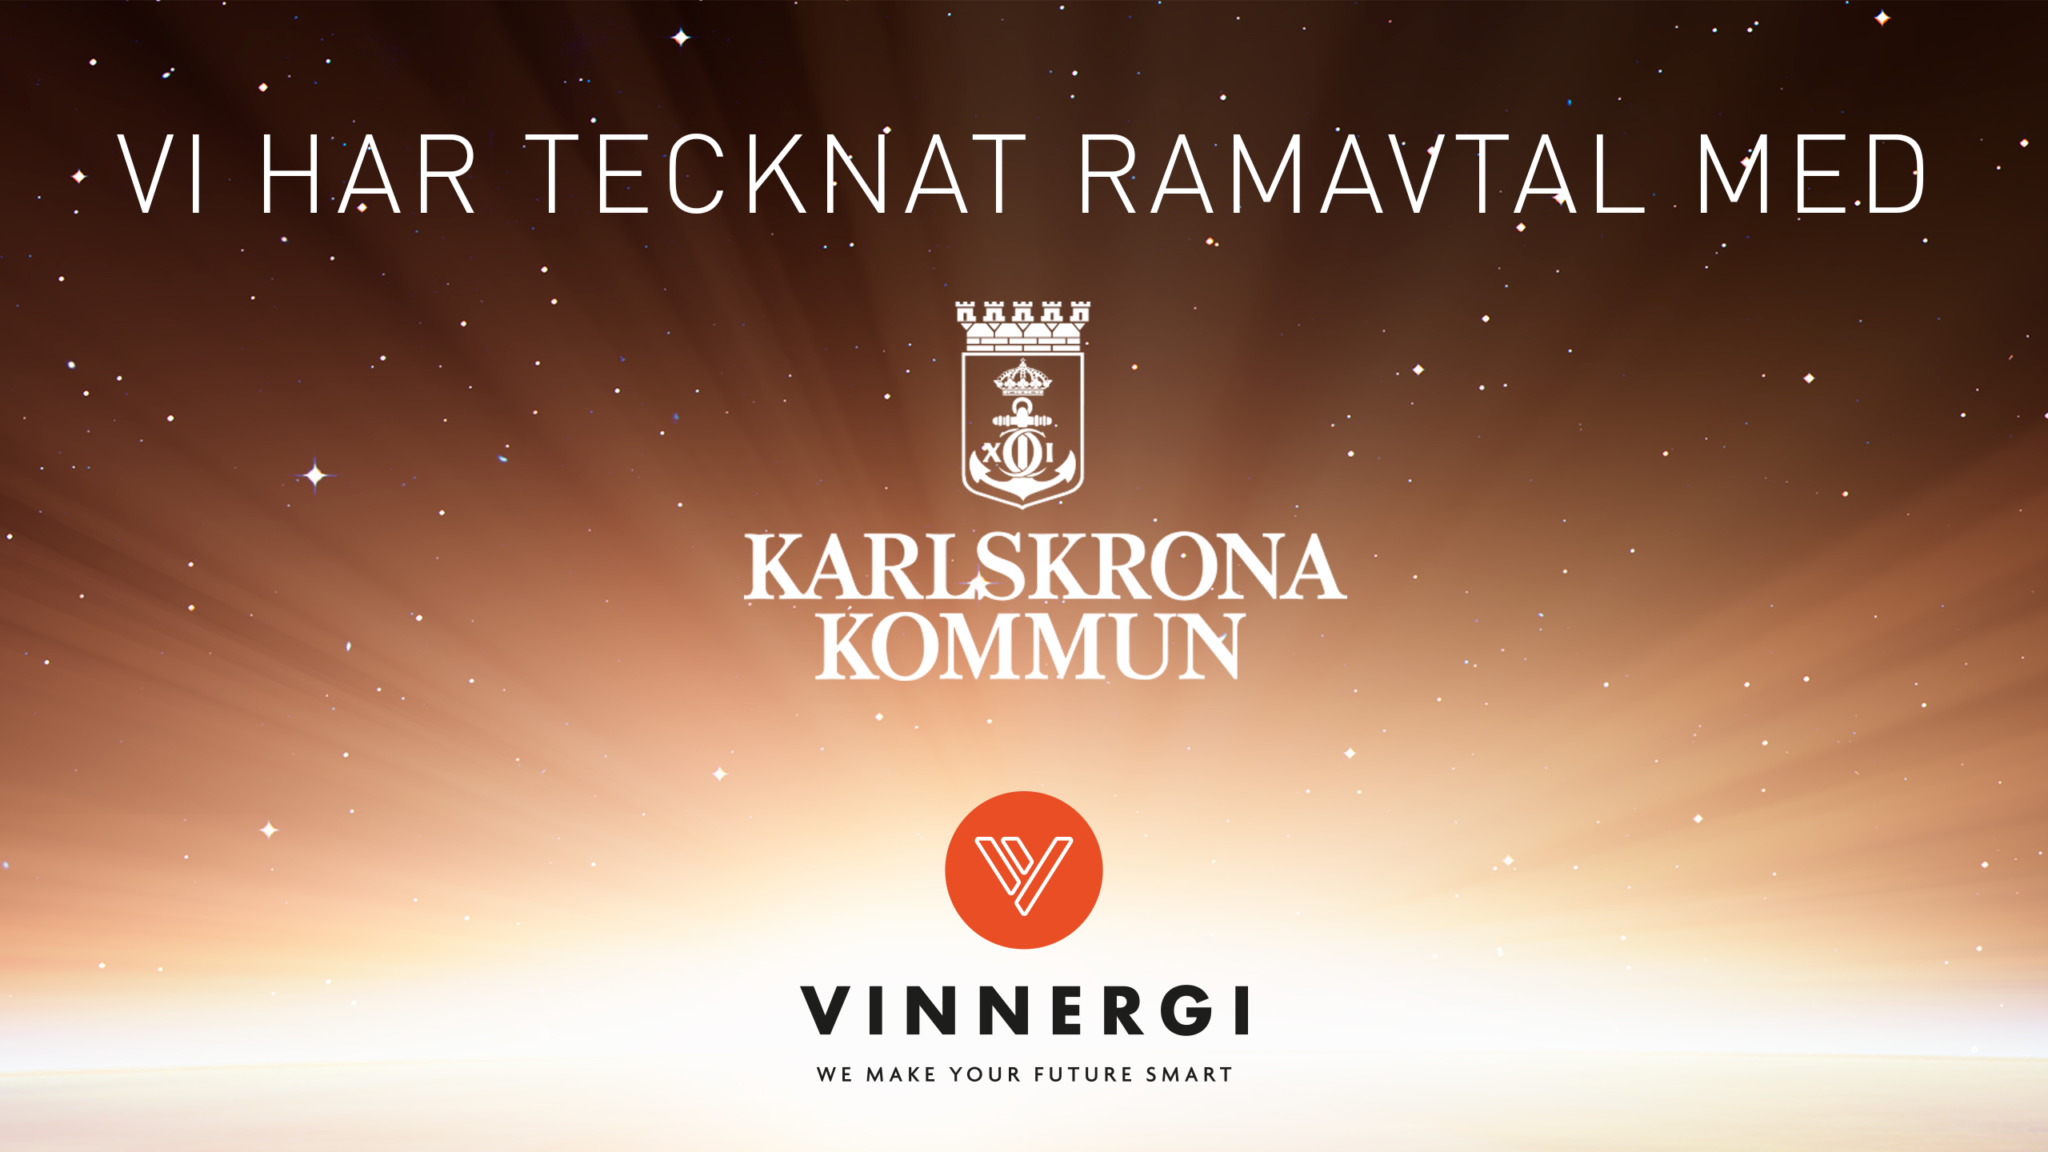 Vinnergi har tecknat ramavtal med Karlskrona Kommun för konsulttjänster inom El